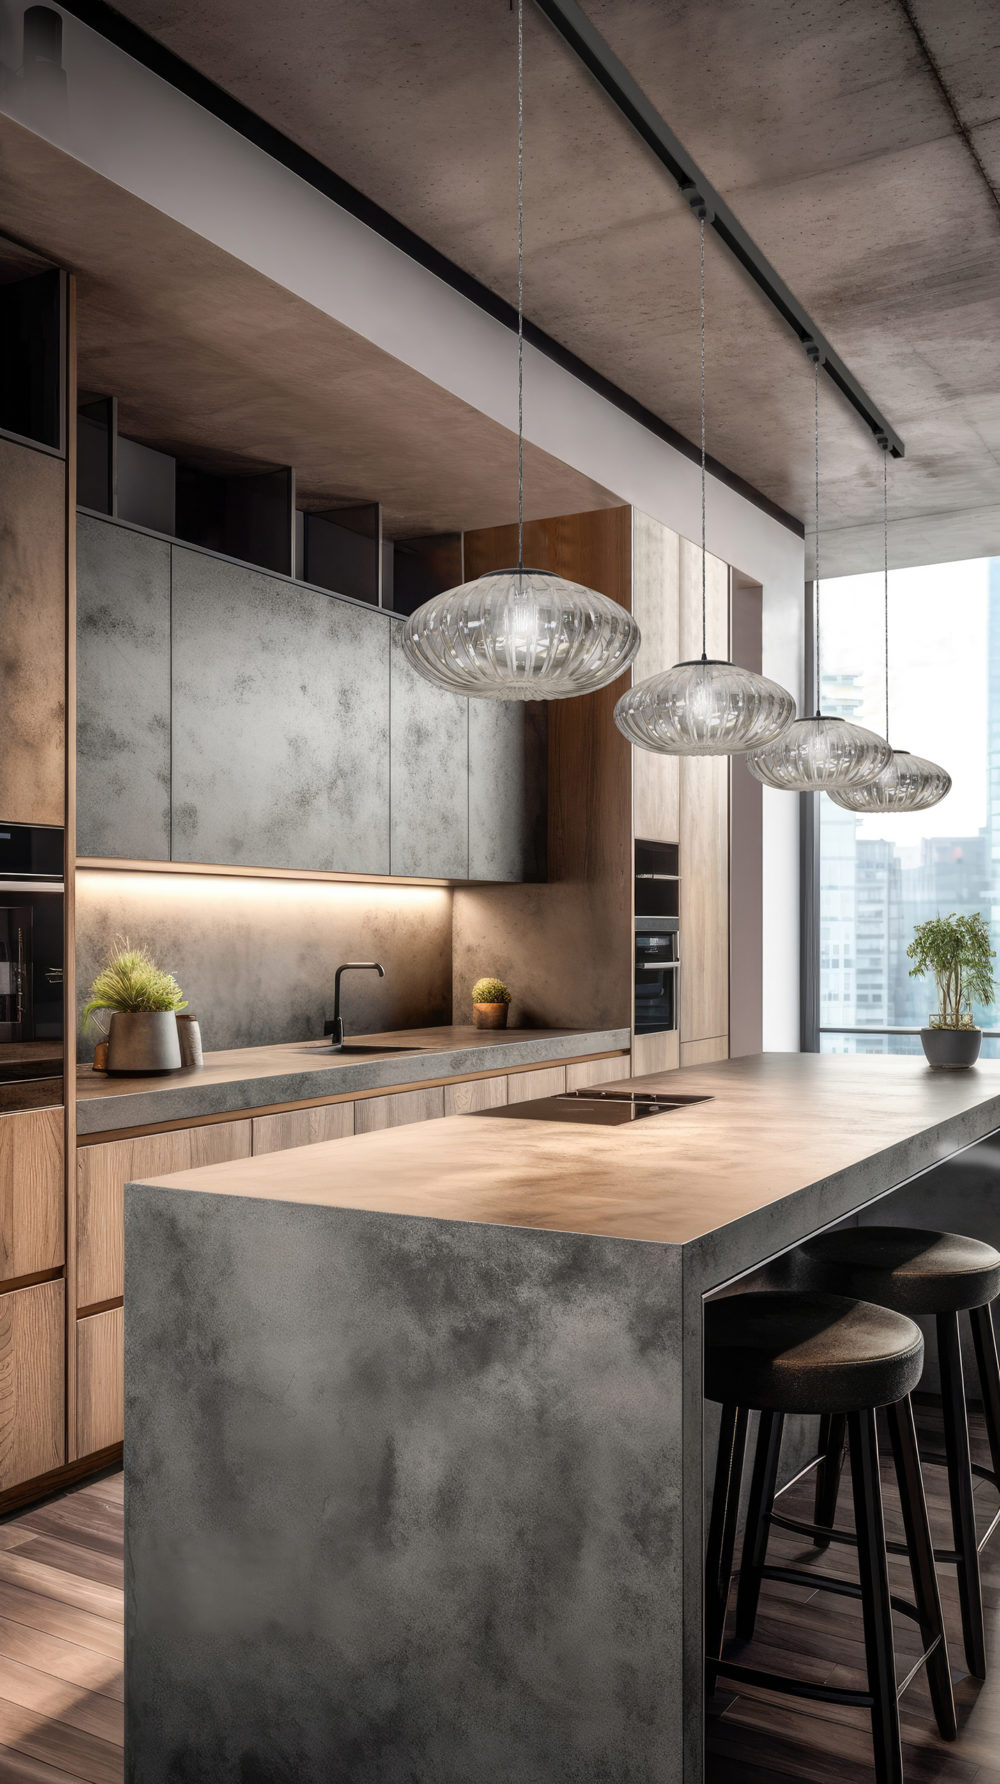 Kitchen interior architecture minimalist style